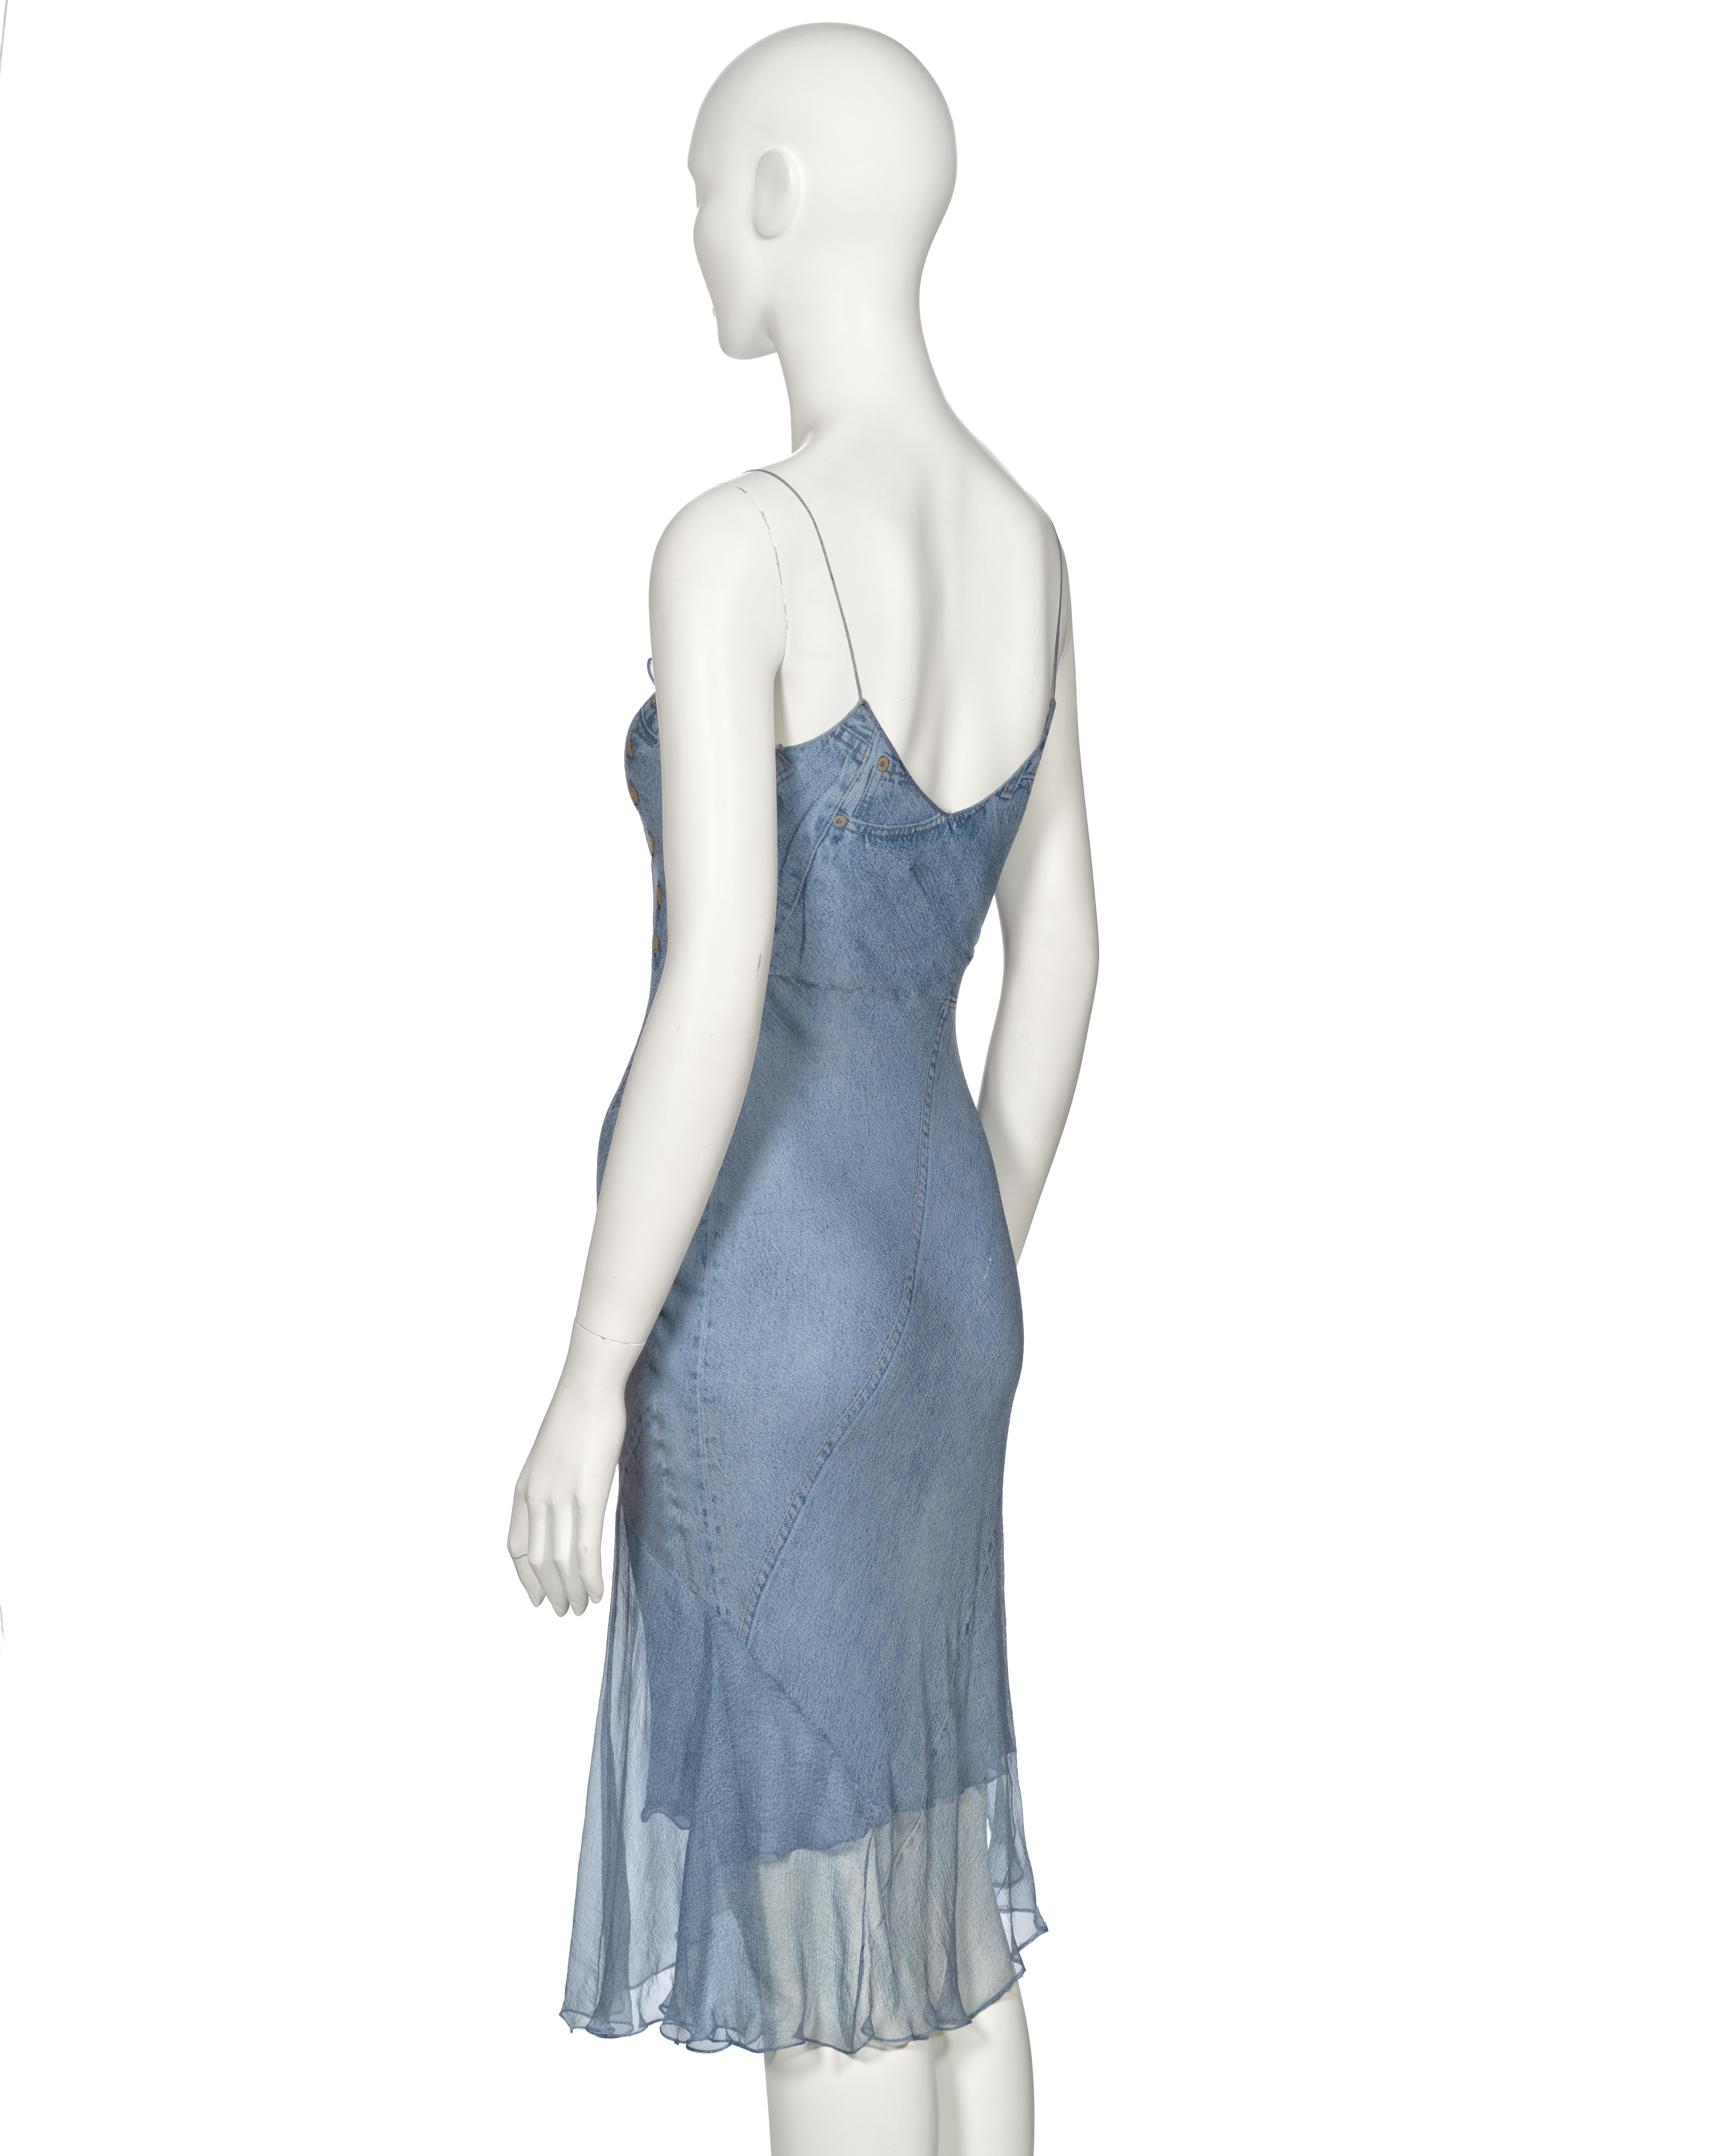 Christian Dior by John Galliano Trompe L'oeil Denim Print Silk Dress, ss 2000 6